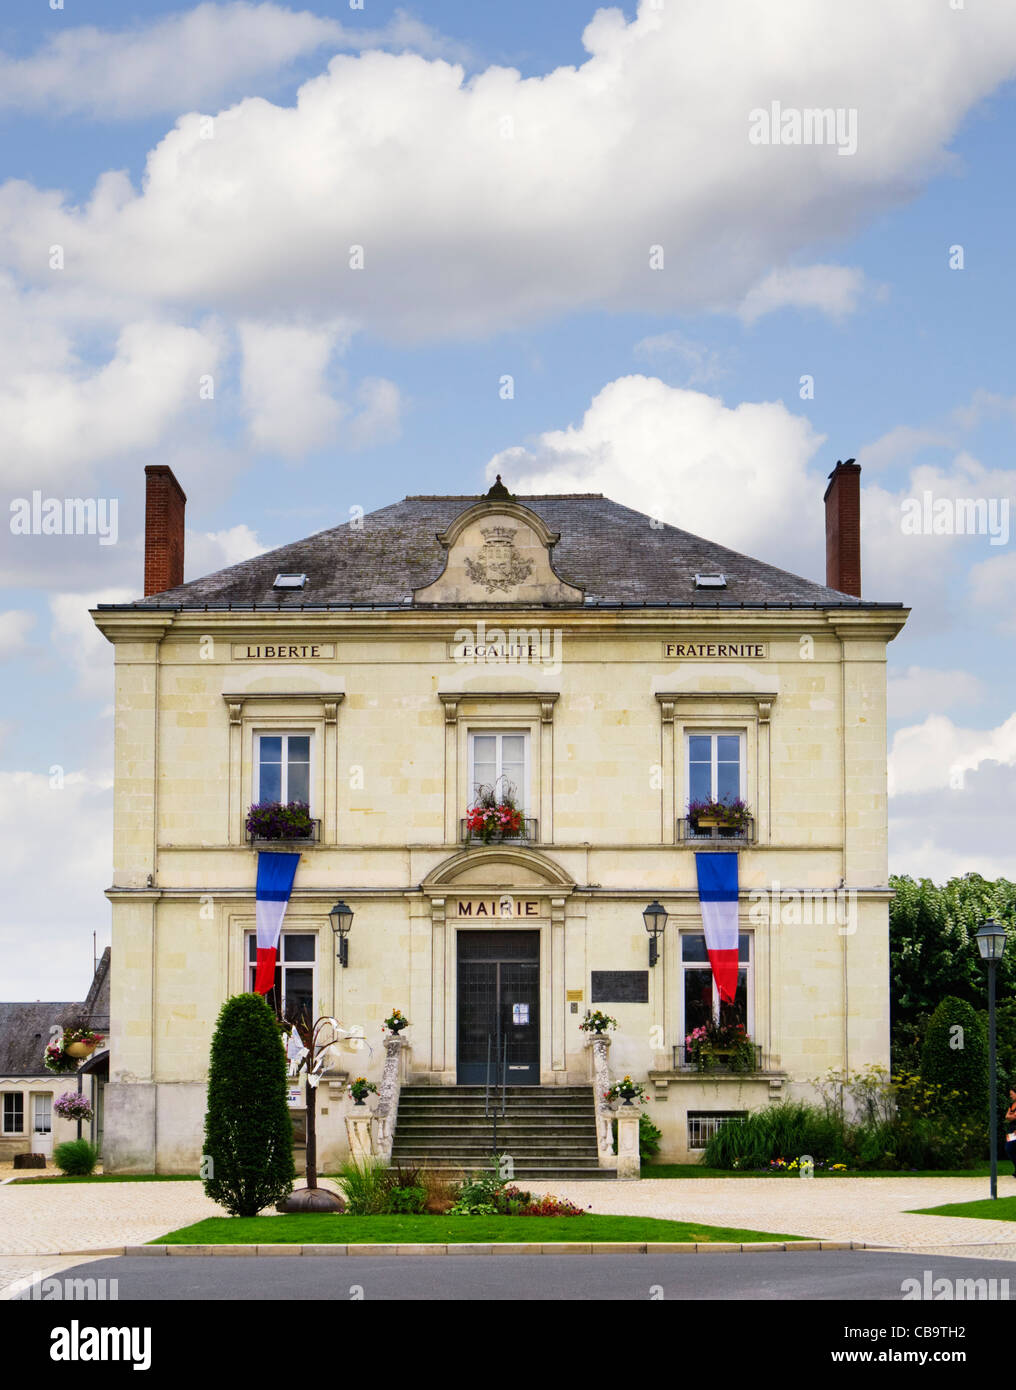 Mairie oder Town Hall in wickelten, Loiretal, Frankreich Stockfoto